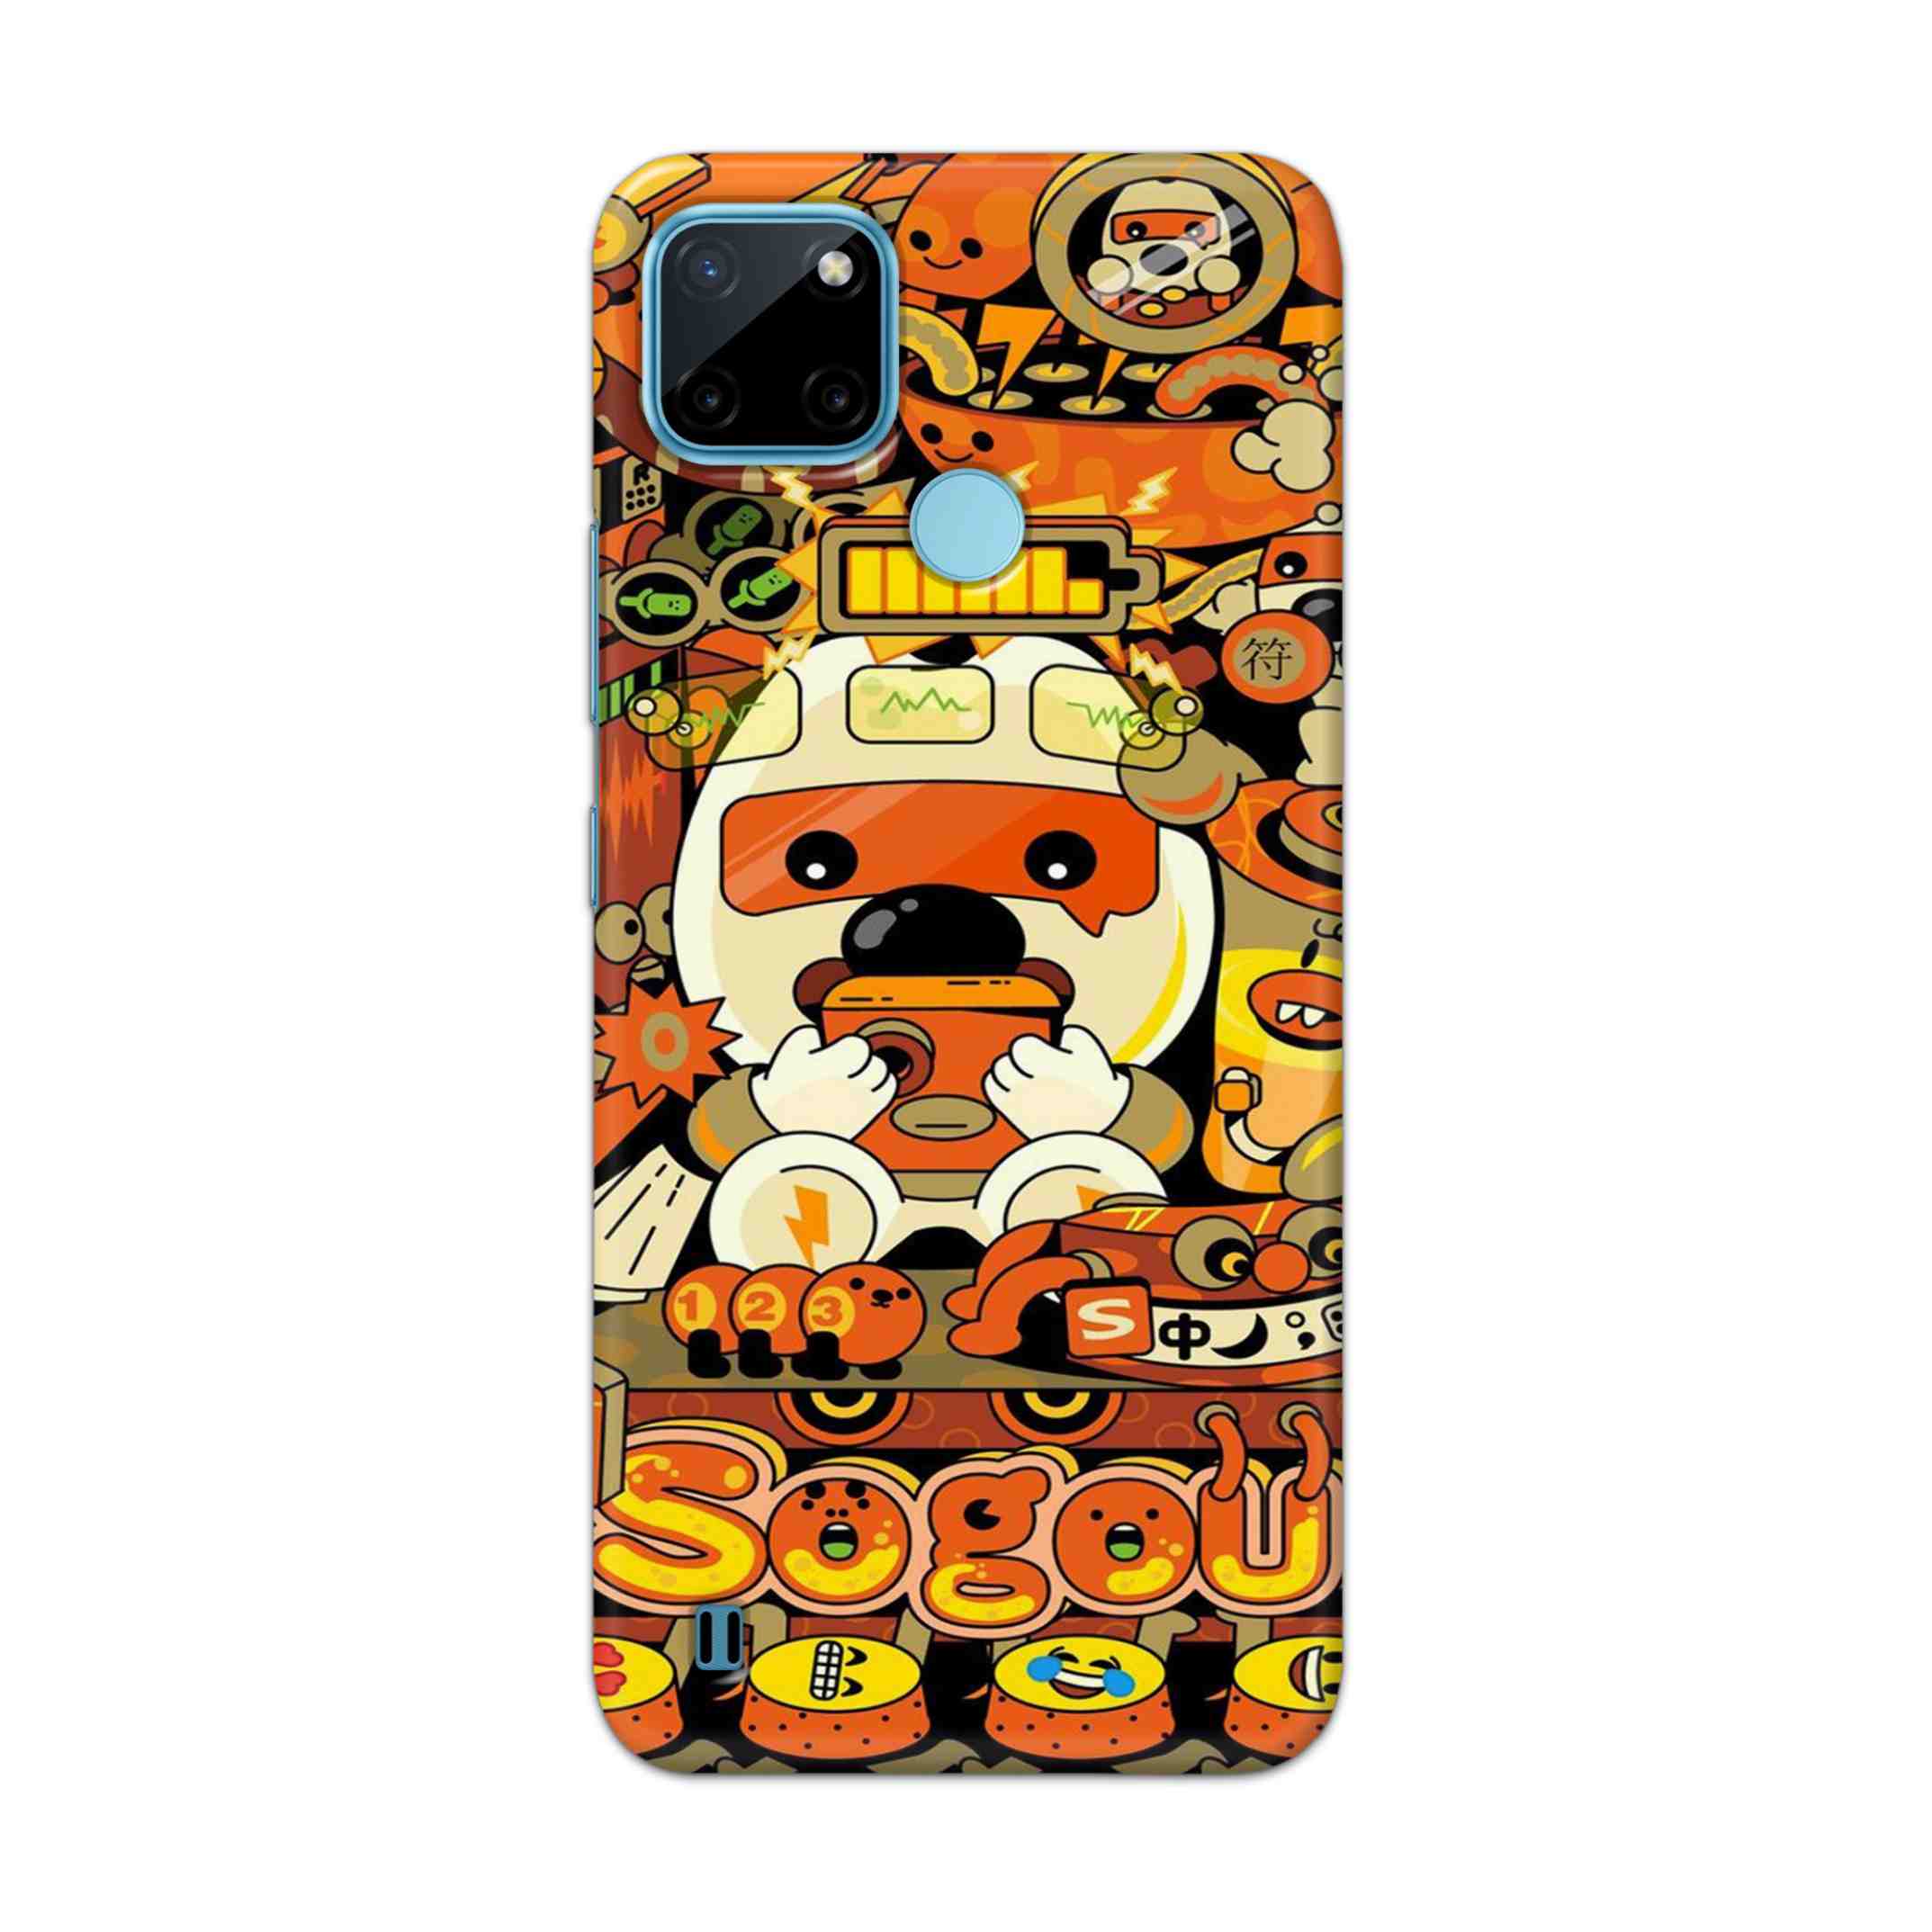 Buy Sogou Hard Back Mobile Phone Case Cover For Realme C21Y Online